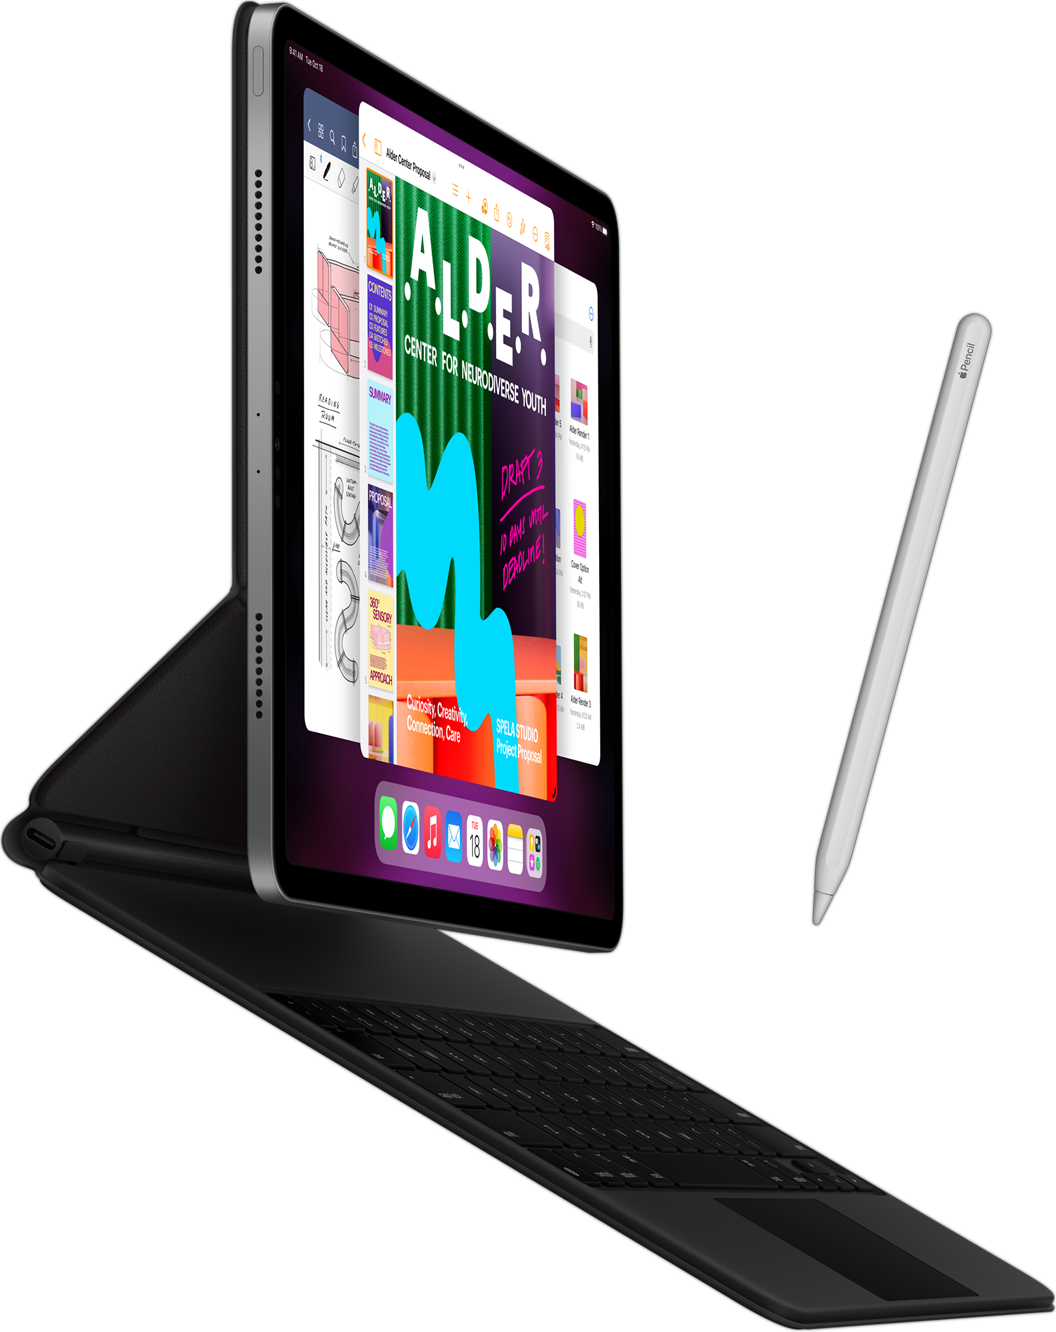 Sivunäkymä iPad Prosta, johon on liitetty Smart Keyboard Folio. Kuvassa näkyy myös Apple Pencil